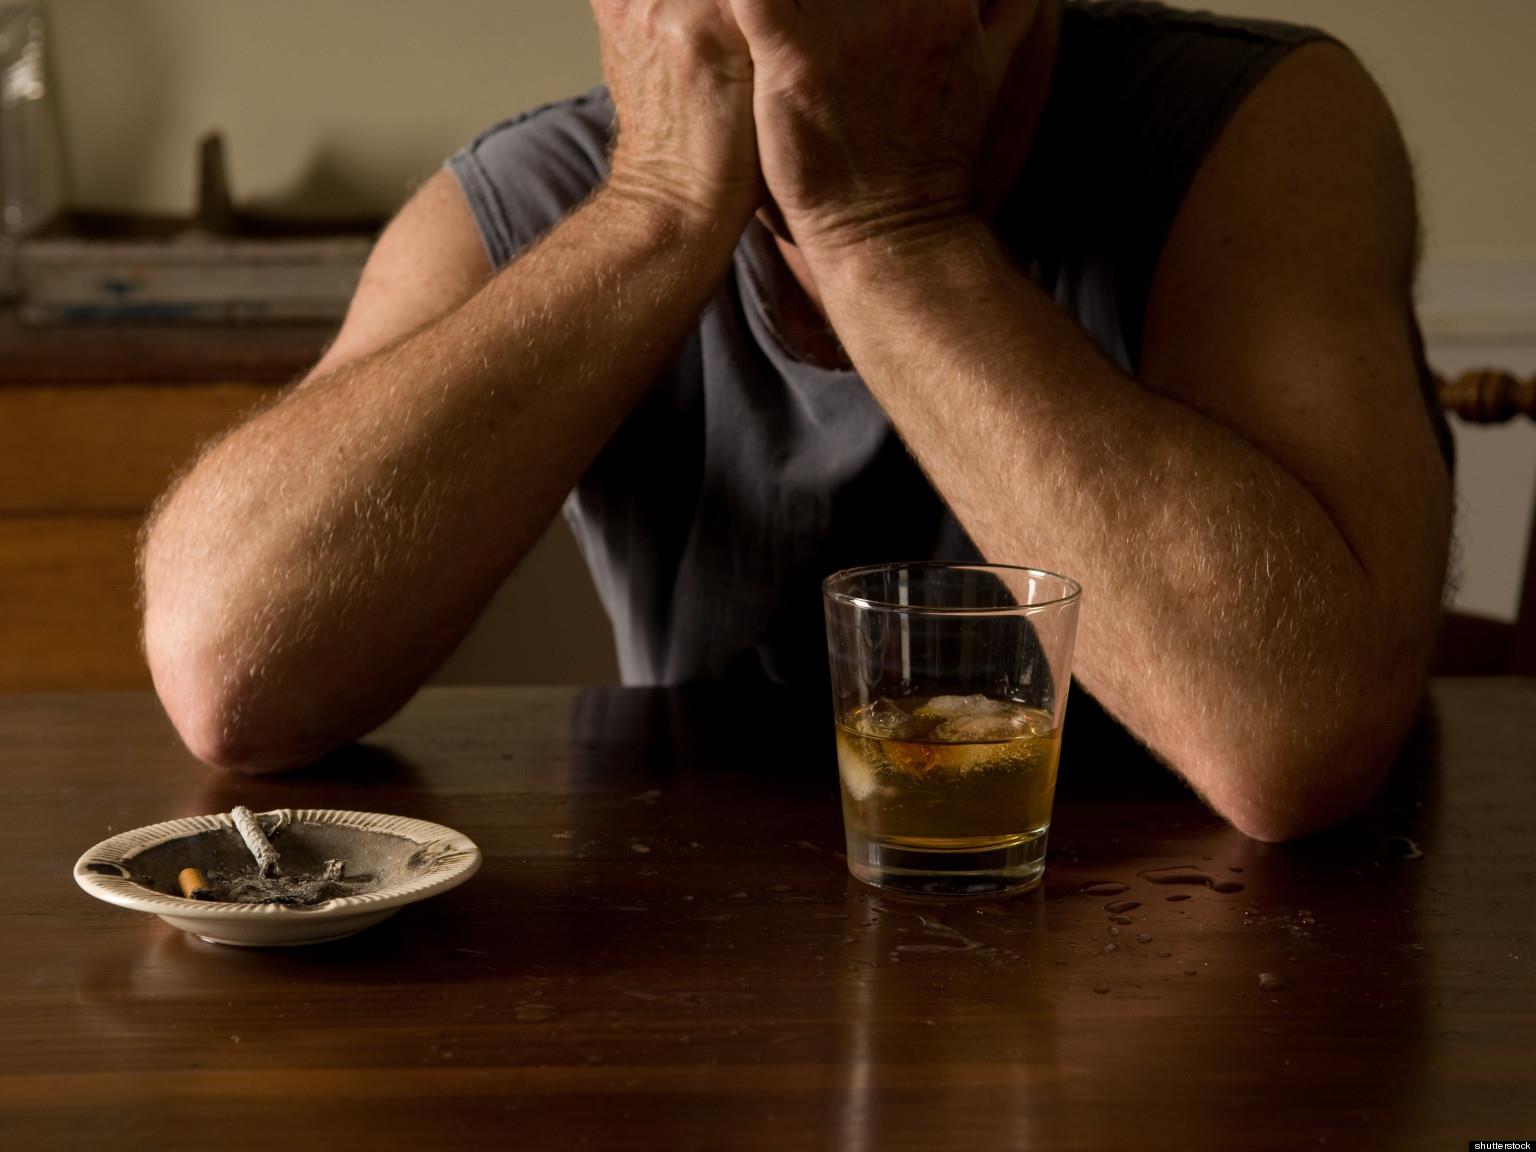 Se ha descubierto lo que probablemente causa la adicción, y no es lo que tú crees